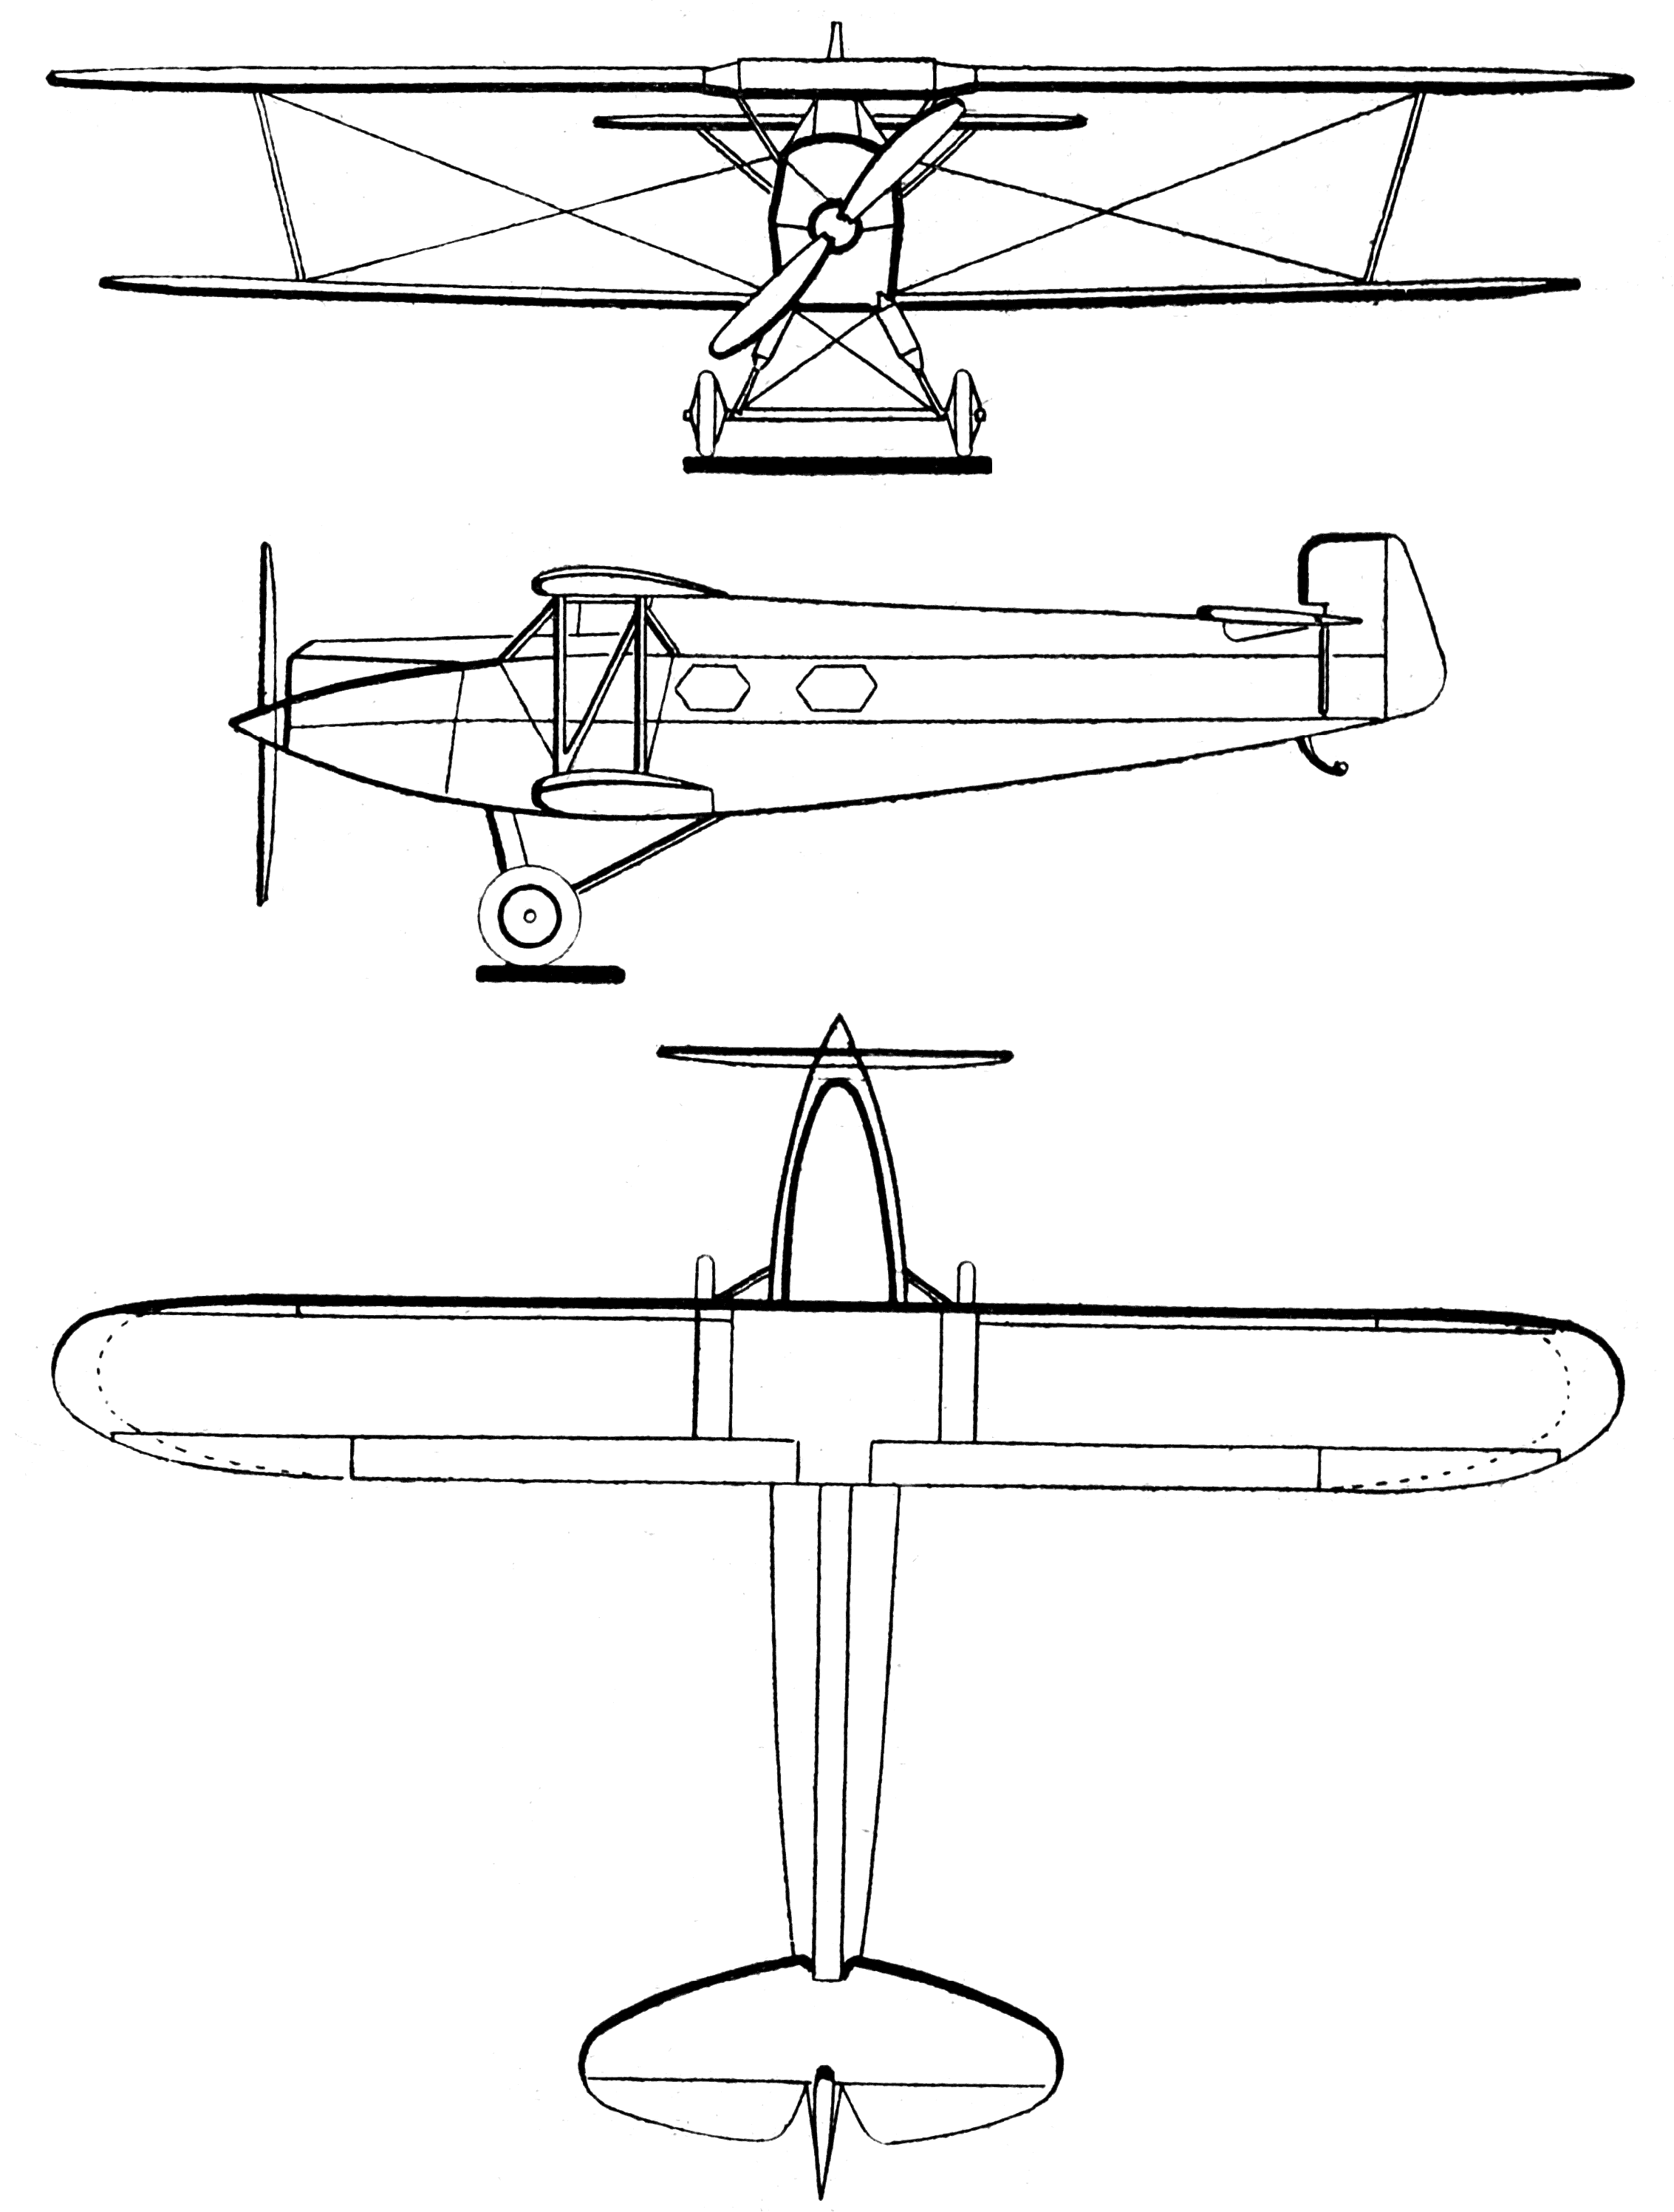 Albatros L 72 blueprint